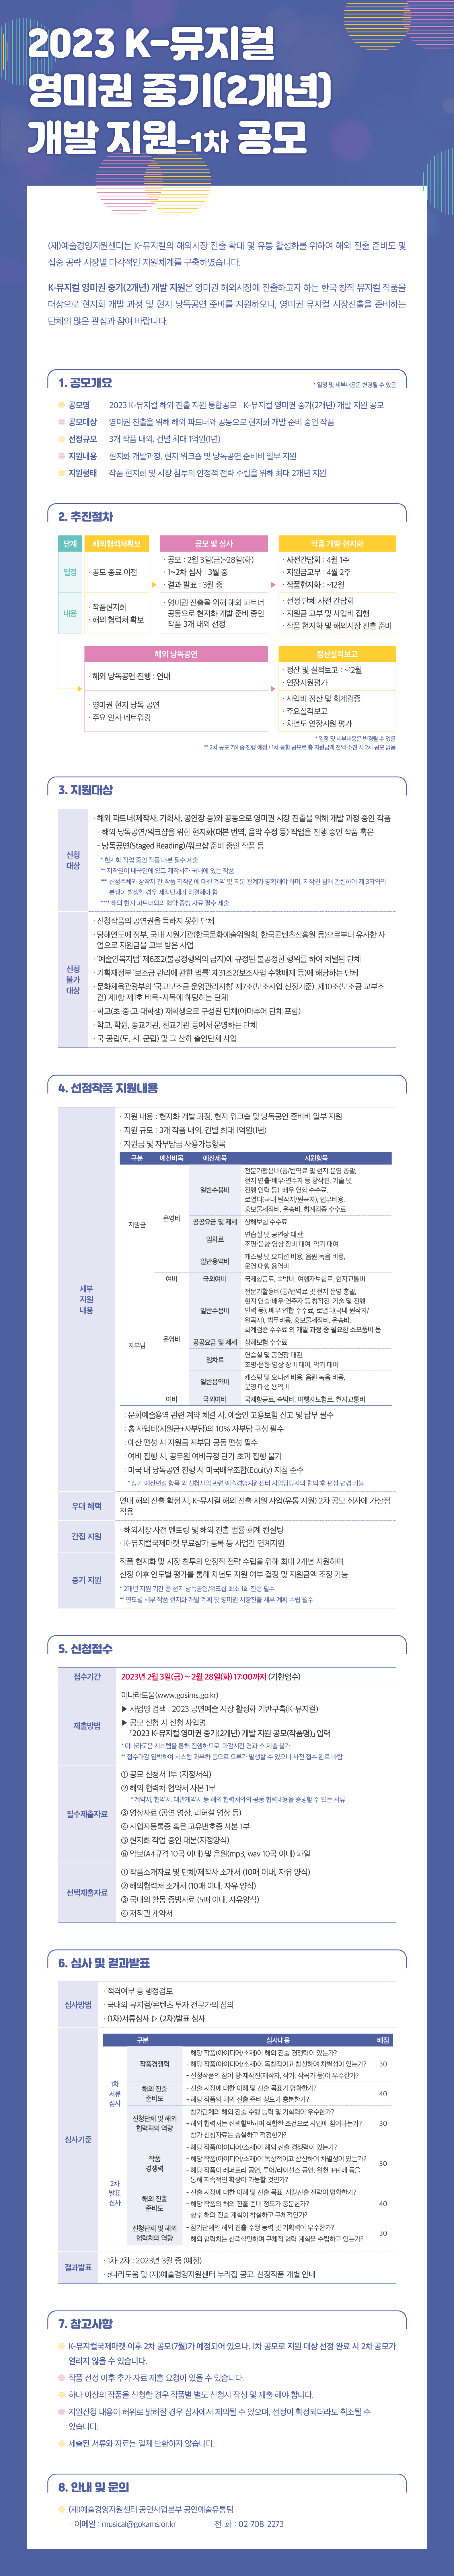 2023 K-뮤지컬 영미권 중기(2개년) 개발 지원 공모